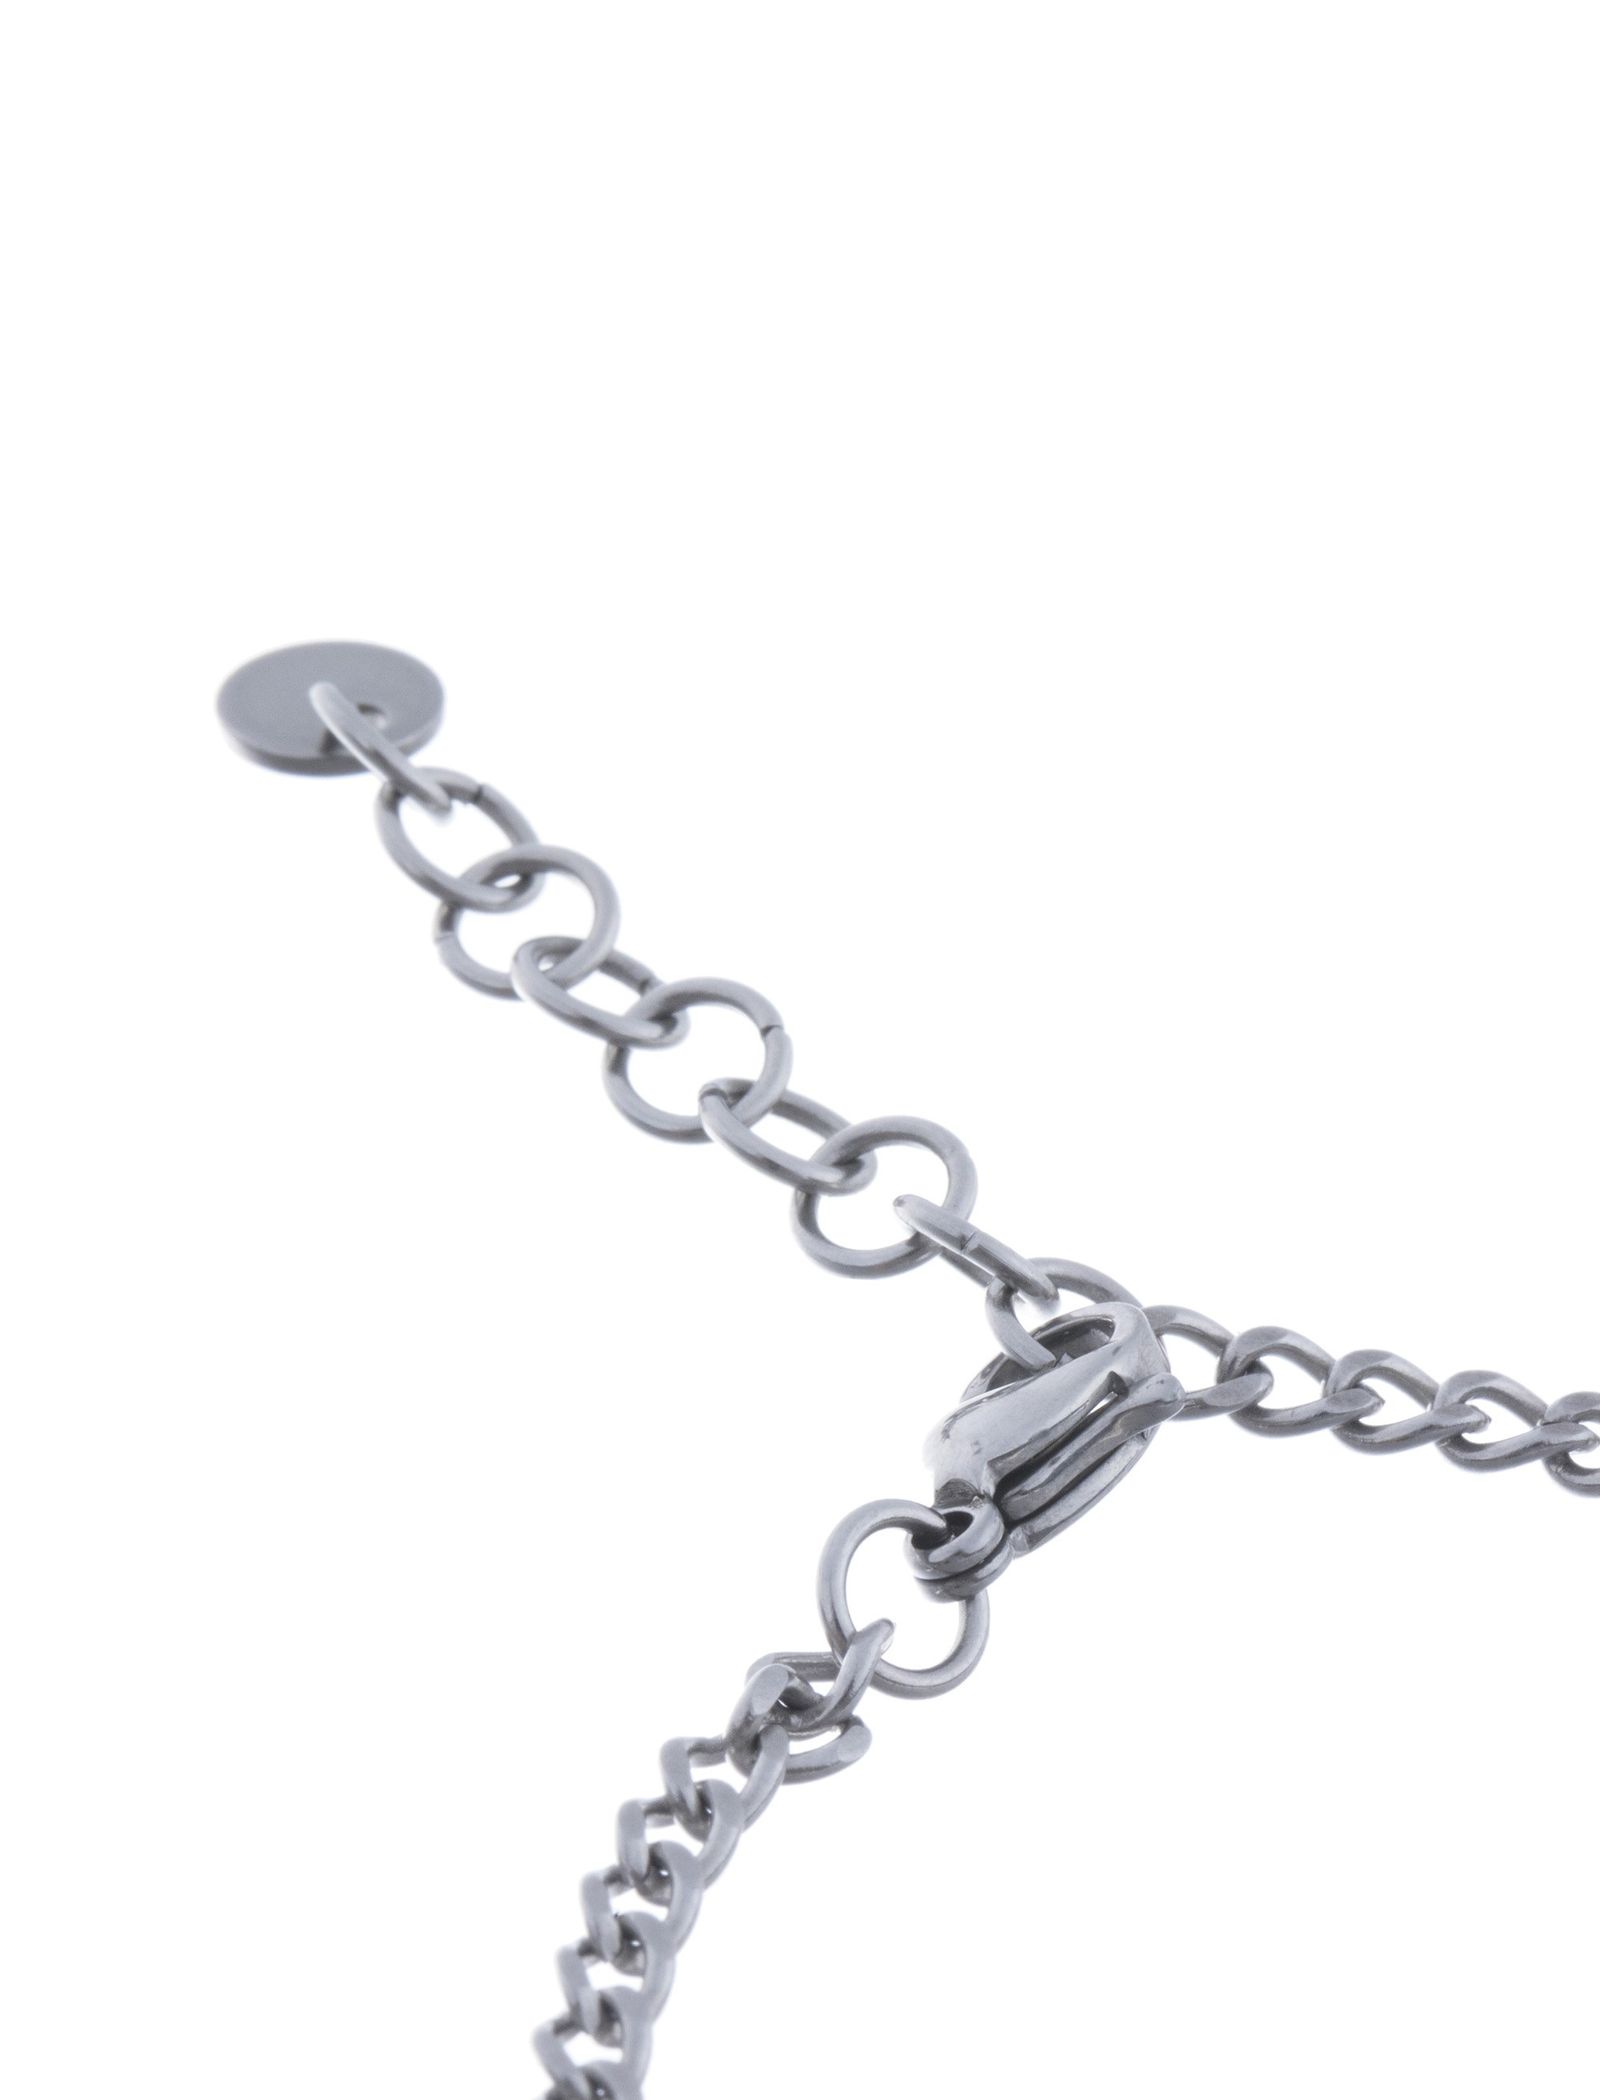 دستبند استیل زنجیری زنانه - برازوی - نقره اي - 5